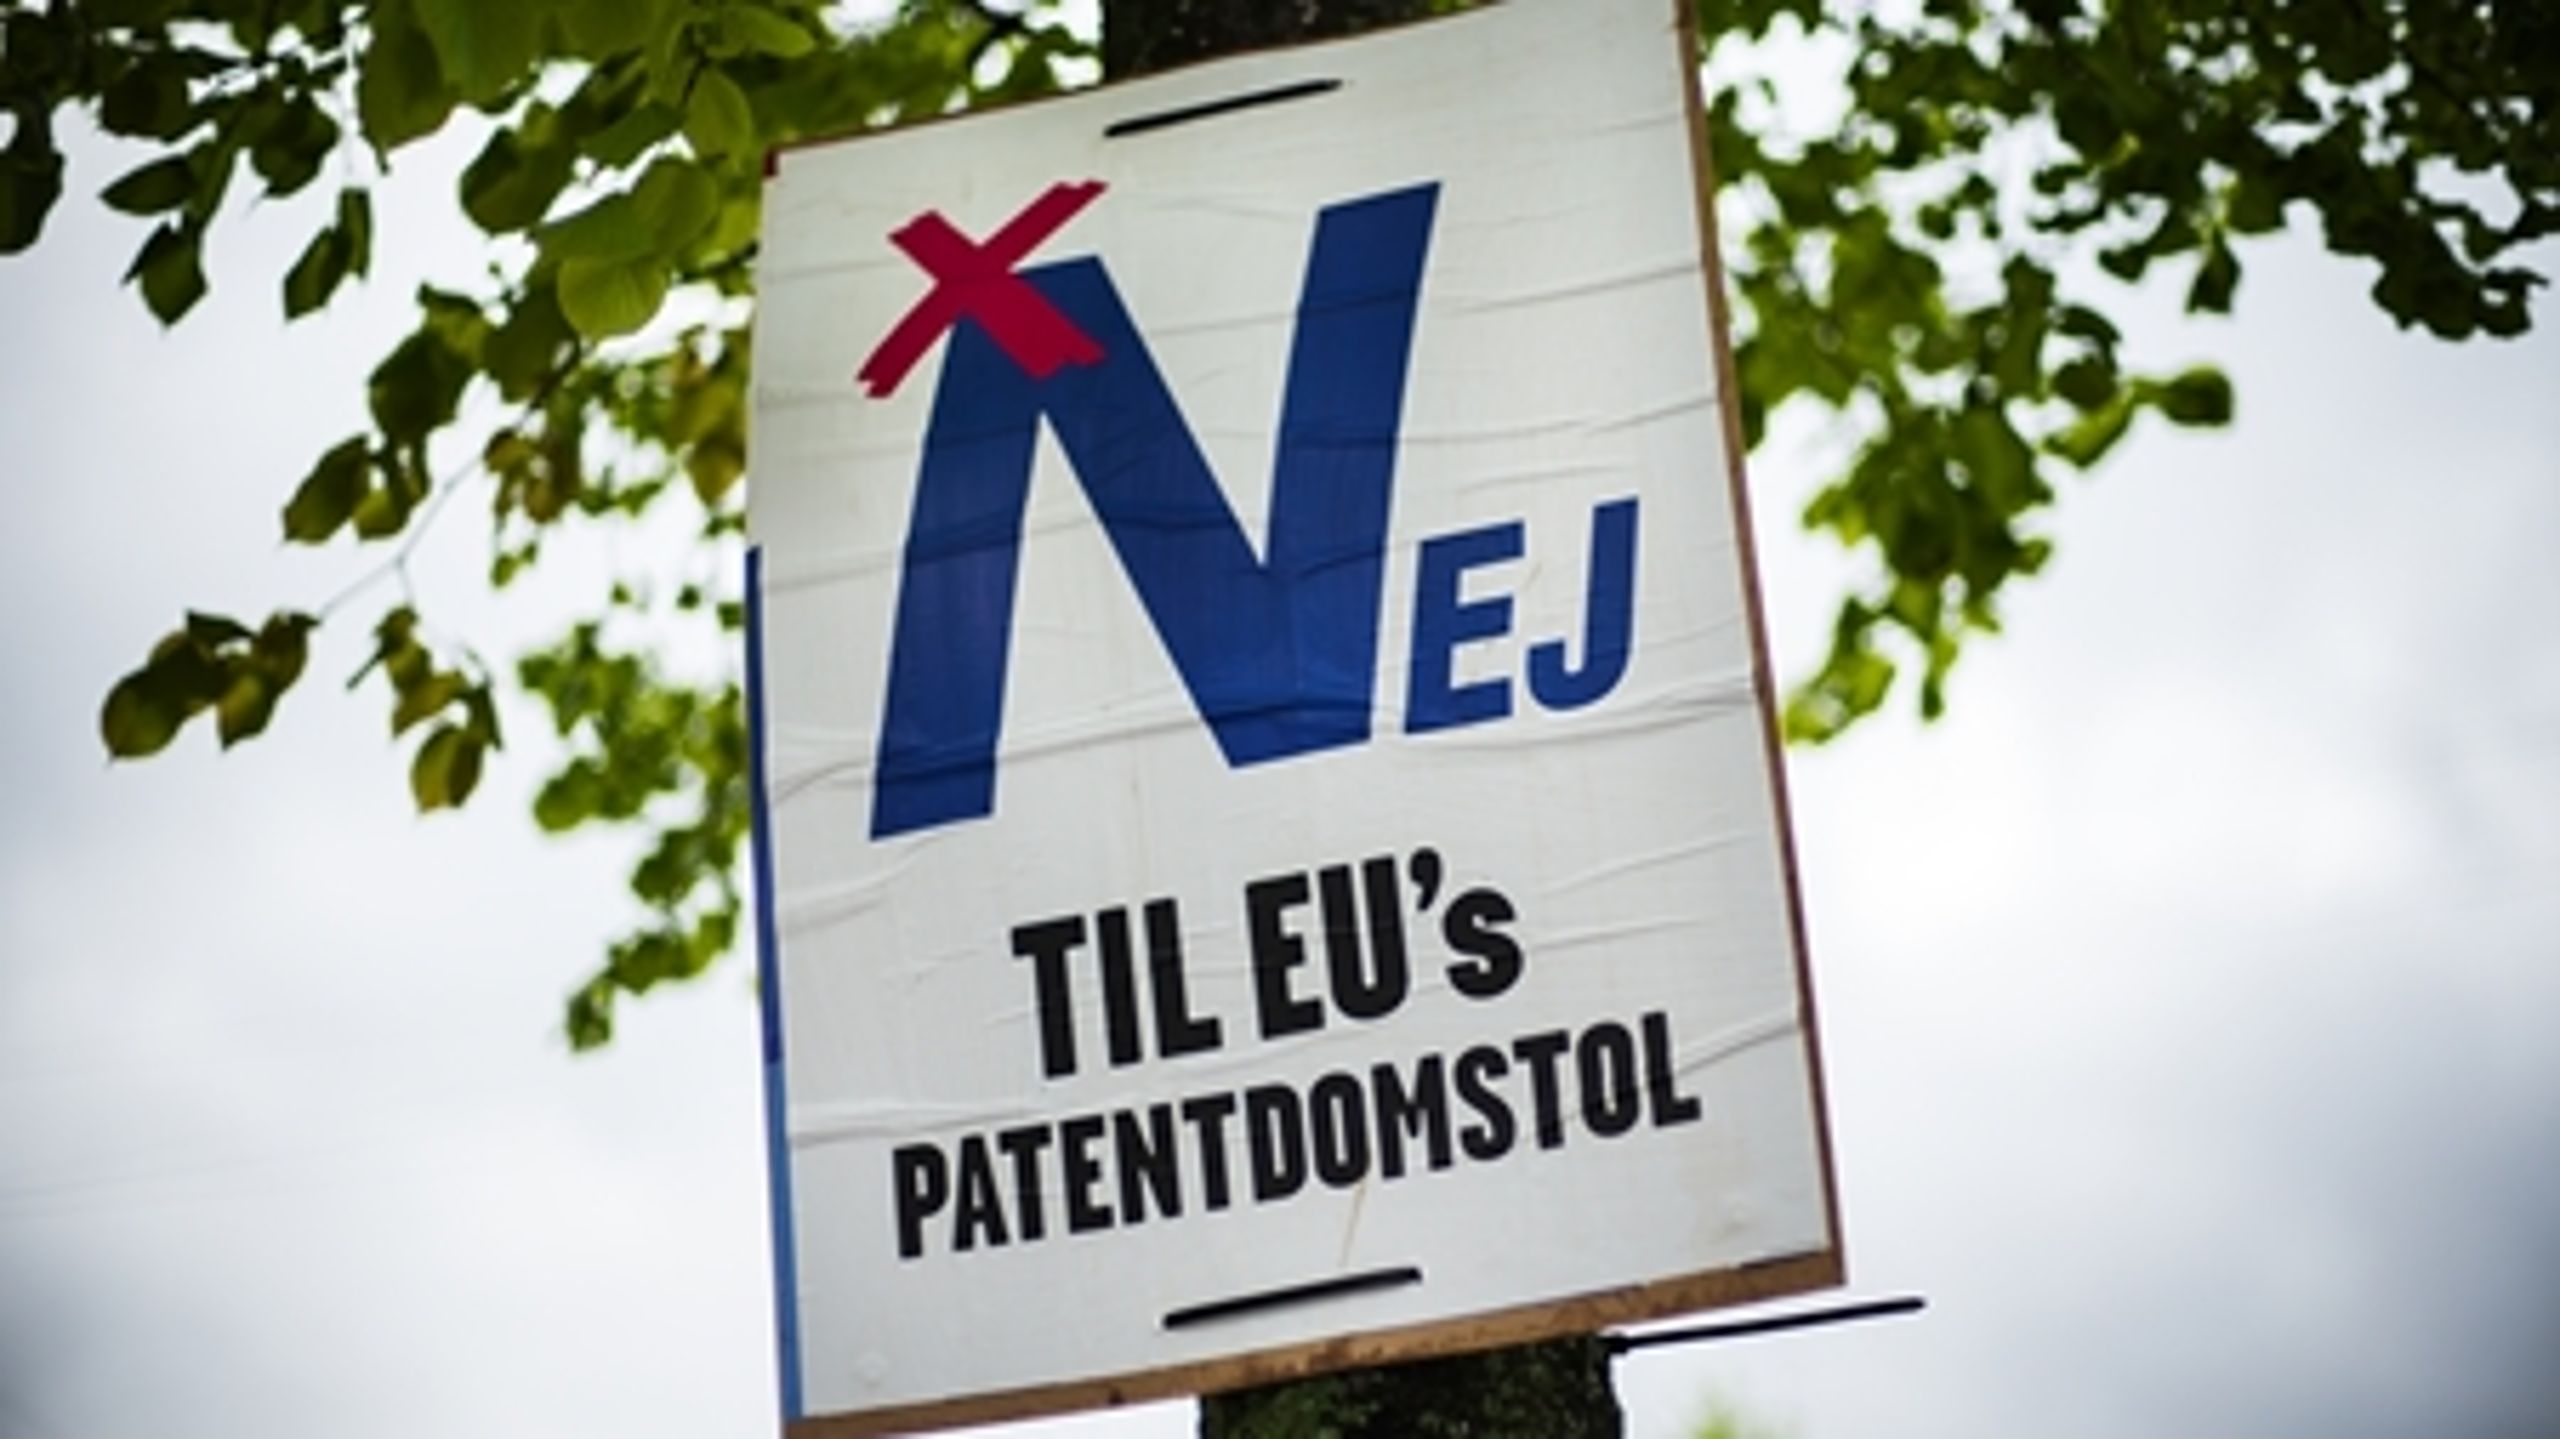 Foruden valg til Europa-Parlamentet fører Folkebevægelsen mod EU også kampagne for et "nej" til patentdomstolen.